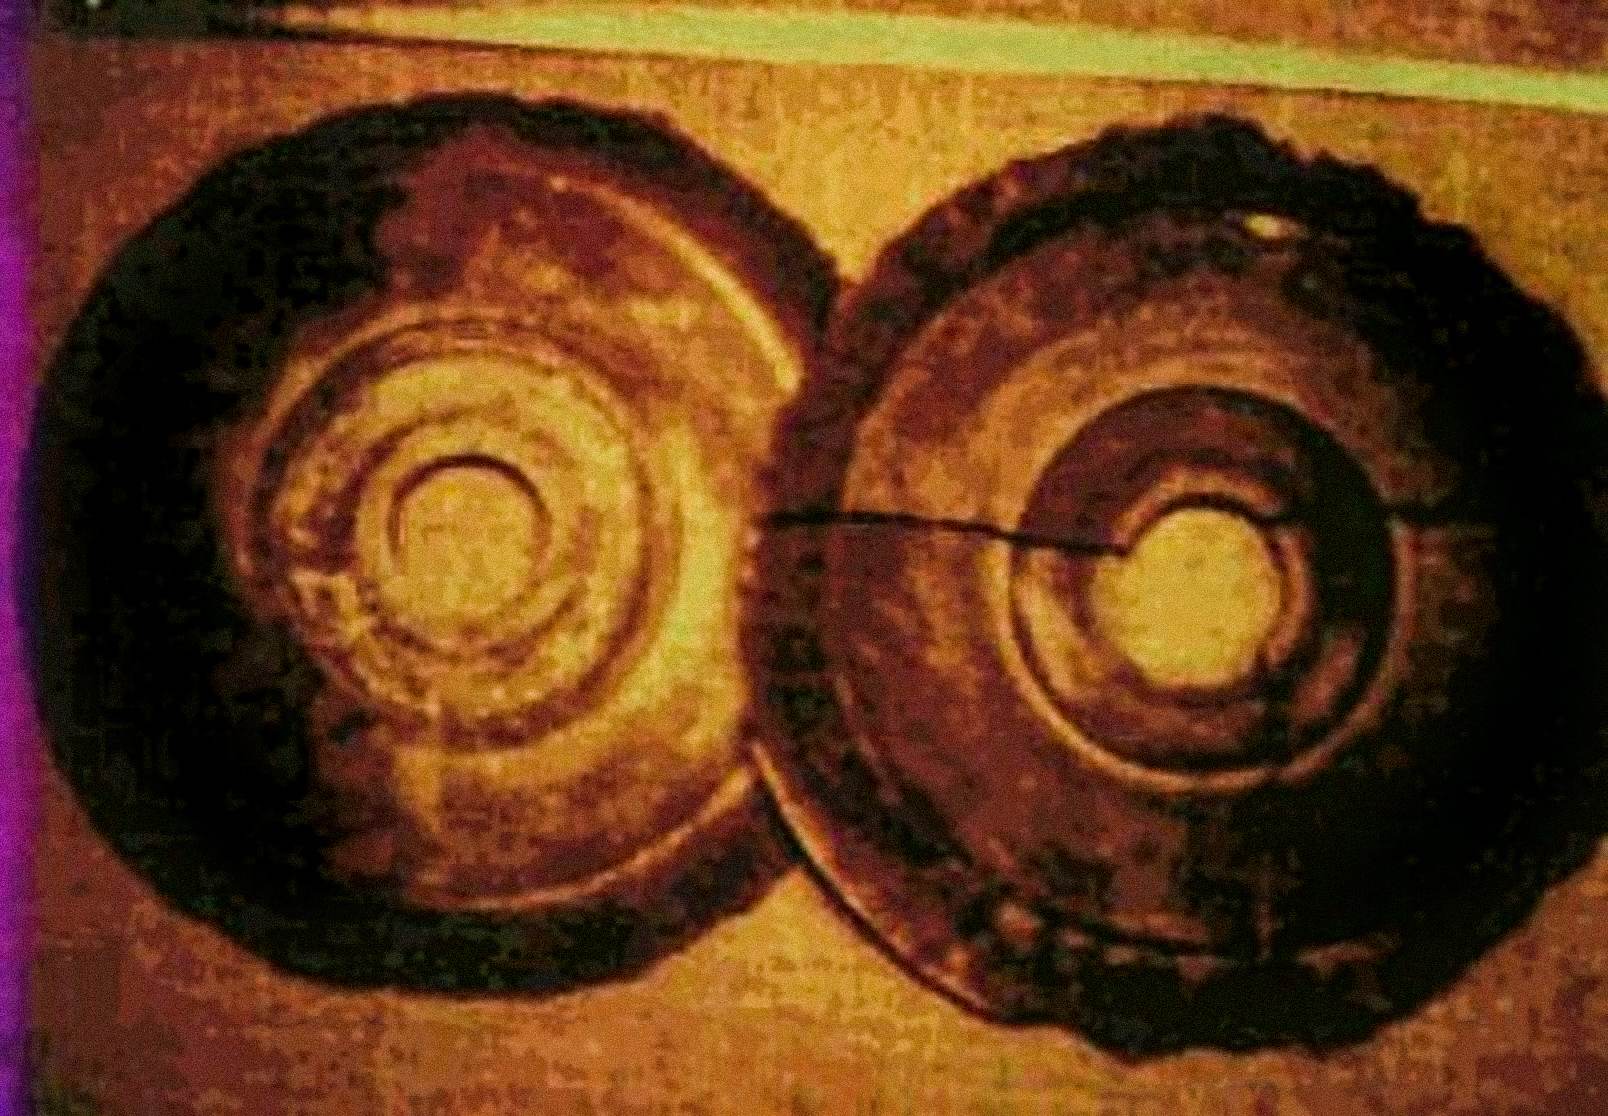 В 1974 году Эрнст Вегерер, австрийский инженер, сфотографировал два диска, которые соответствовали описанию камней Дропа. Он был на экскурсии по музею Баньпо в Сиане, когда увидел выставленные каменные диски. Он утверждает, что видел отверстие в центре каждого диска и иероглифы в частично раскрошившихся спиралевидных канавках.